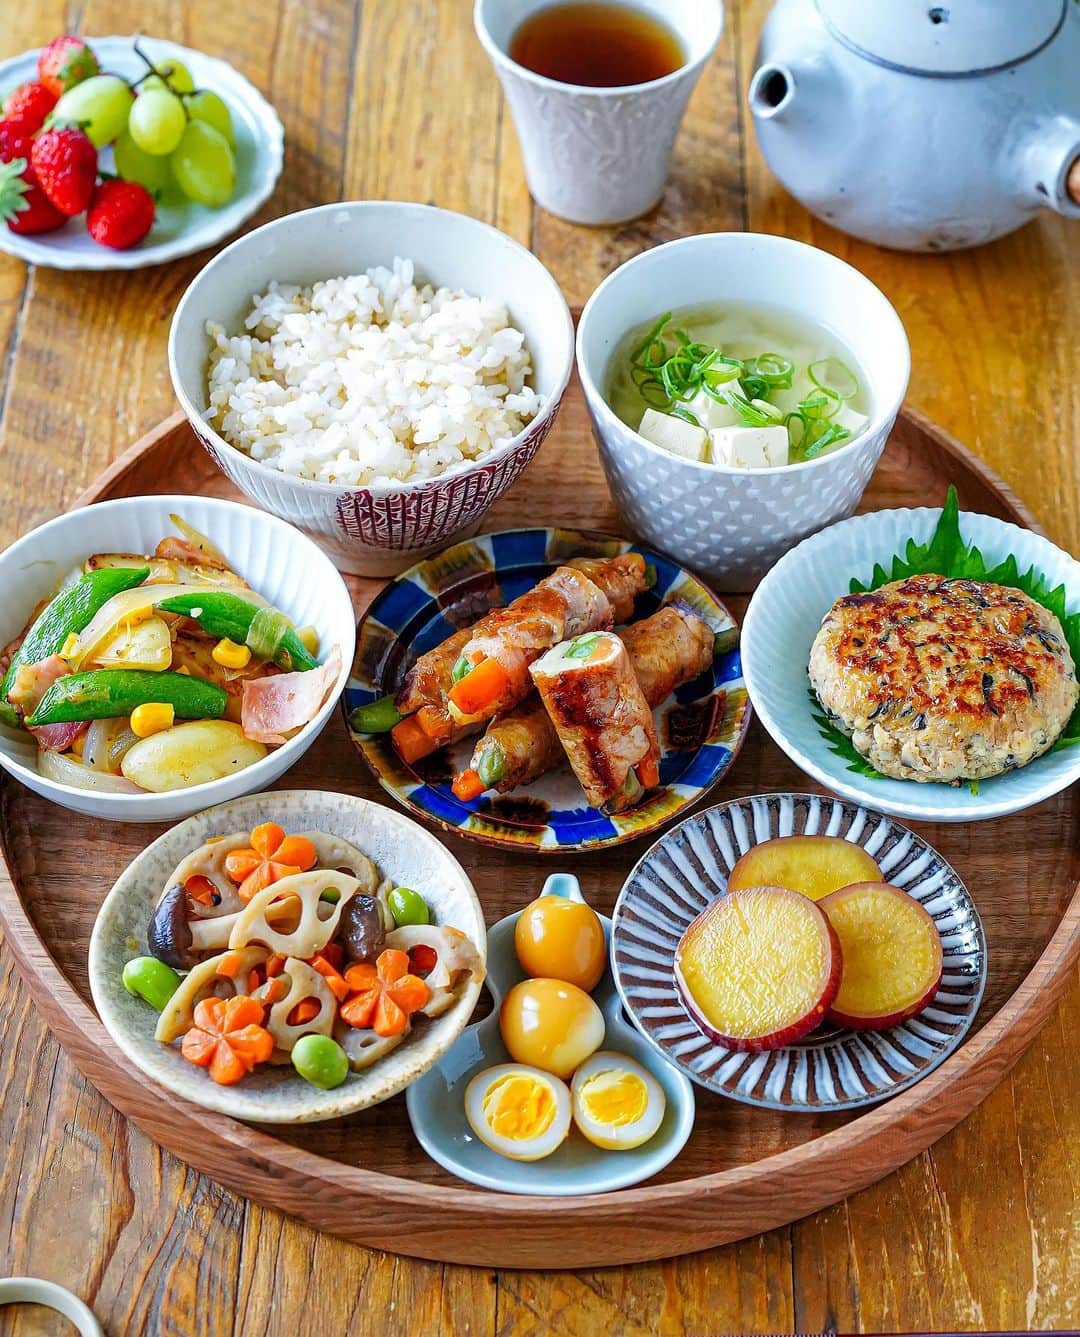 Ayaのインスタグラム：「いつかの晩ご飯と今日のお弁当(2枚目)  おはようございます！ いつかの晩ご飯。  野菜の肉巻き ひじき入り豆腐ハンバーグ スナップエンドウとじゃがいものソテー さつまいもの甘煮 きんぴら うずらの味玉 豆腐の味噌汁 玄米入りごはん いちご/トンプソン  今日のお弁当は蓮根のはさみ焼き(詳細はストーリーに😊) そして今日もさつまいもの甘煮。  私のカメラのデータがお弁当だらけになっています🤣  一年前はお弁当を毎日作るなんて無理！と思っていましたが、家族の反応や感想、ストーリーにいいねやコメントをくださる方々のおかげで毎日乗り切れています😆ありがとうございます🙏  そして同じお弁当仲間のみなさんから刺激をもらっています😊💓  昨日はお弁当の盛り付け途中でタイムアウトになりましたが😂、私も盛り付け全工程を納められるぐらい成長したいです😂✨  それではよい一日をお過ごしください✨  #手作り#手作りごはん#晩ご飯#お弁当#和食#野菜の肉巻き#蓮根のはさみ焼き#フーディーテーブル #おうちごはんlover #マカロニメイト  #homemade#homemadefood #dinner#lunchbox#japanesefood#foodporn#foodie#foodstagram#foodpics#igersjp」